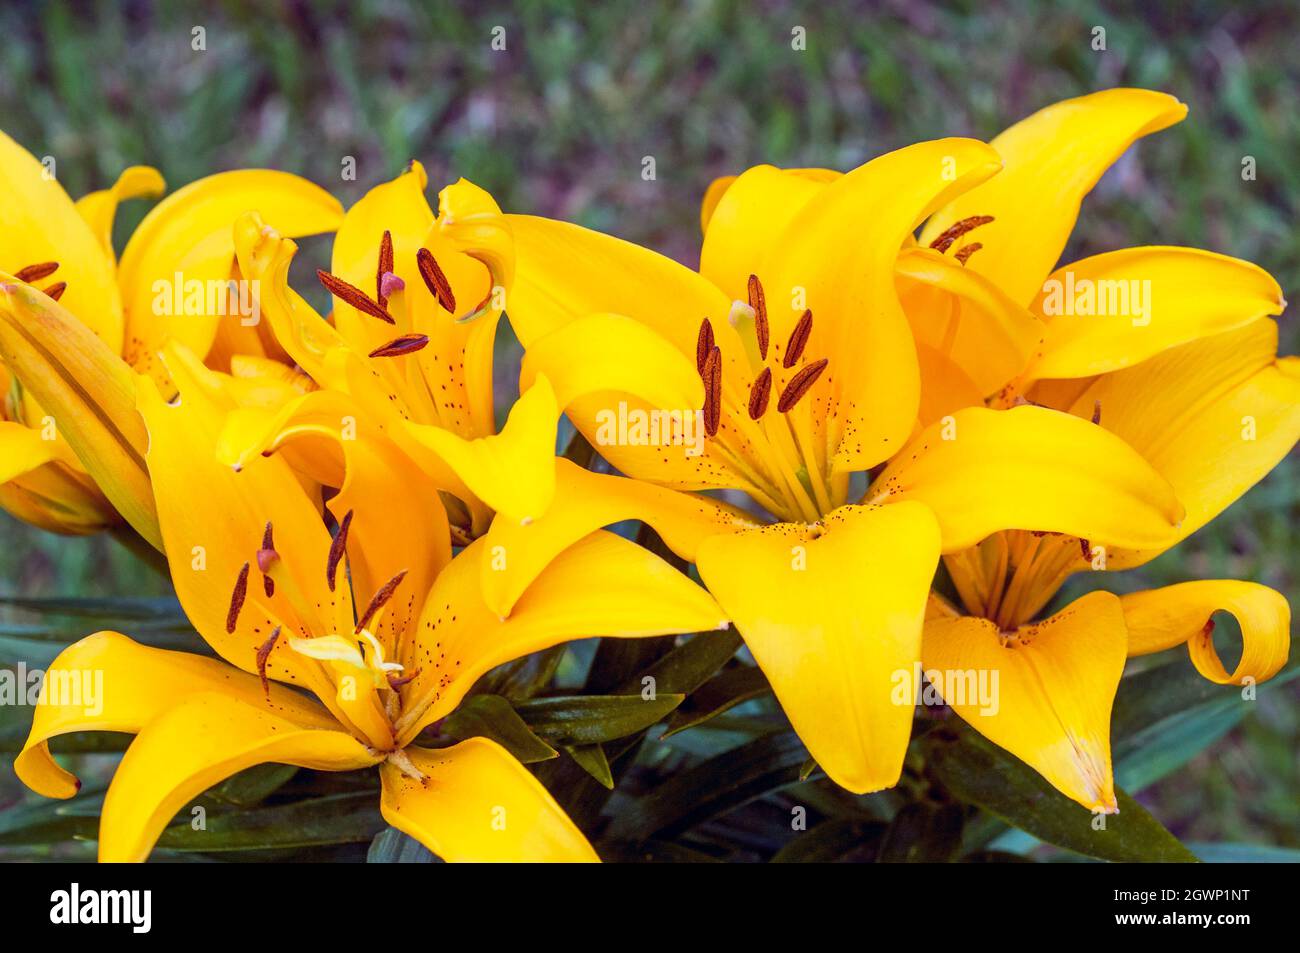 Gruppe von winzigen gelben asiatischen Hybridrilsen in der Grenze, die vor einem Hintergrund aus grünen Blättern Aufgestellt Sind, Eine 1a)-Unterteilung-Lilie mit nach oben gerichteten Blüten Stockfoto